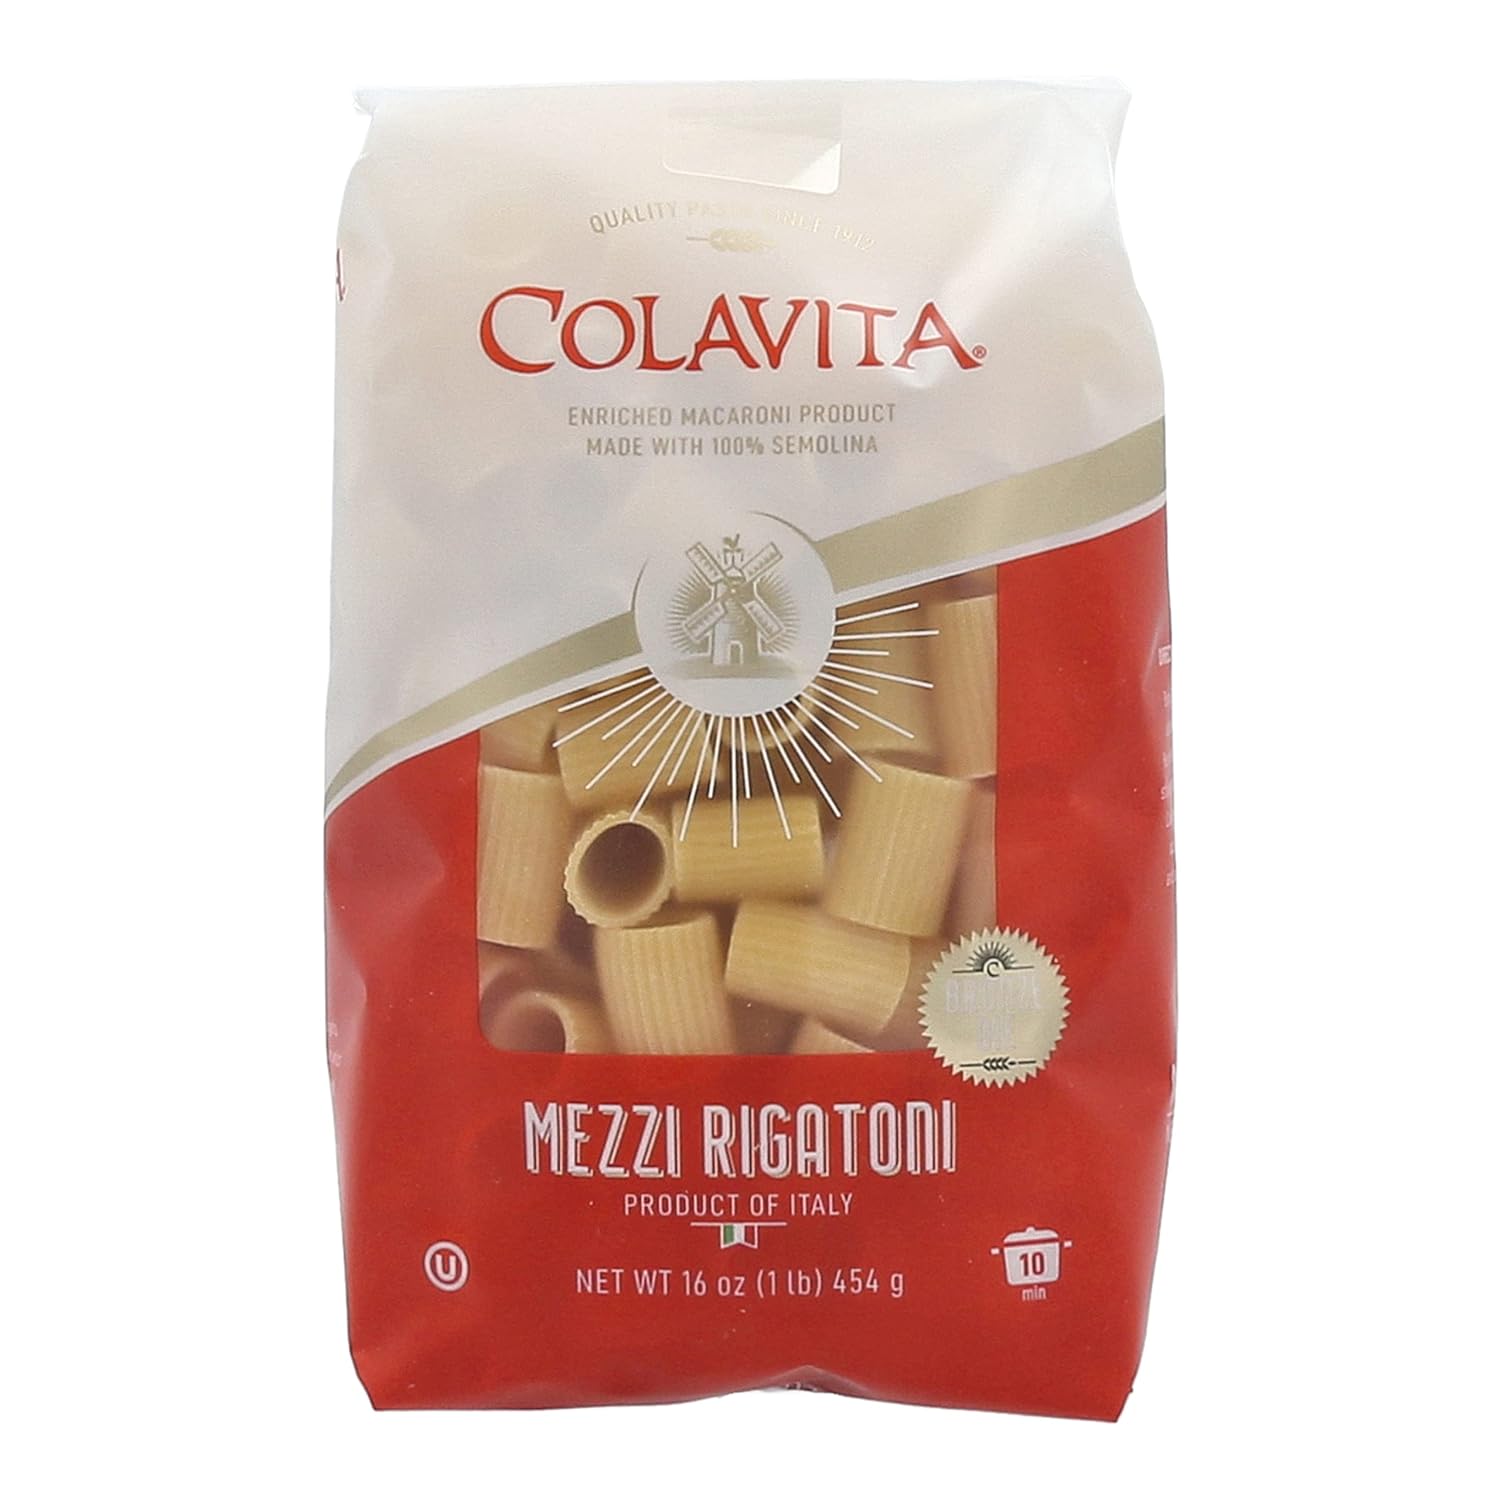 Colavita Pasta - Mezzi Rigatoni, 1 Pound - Pack of 20